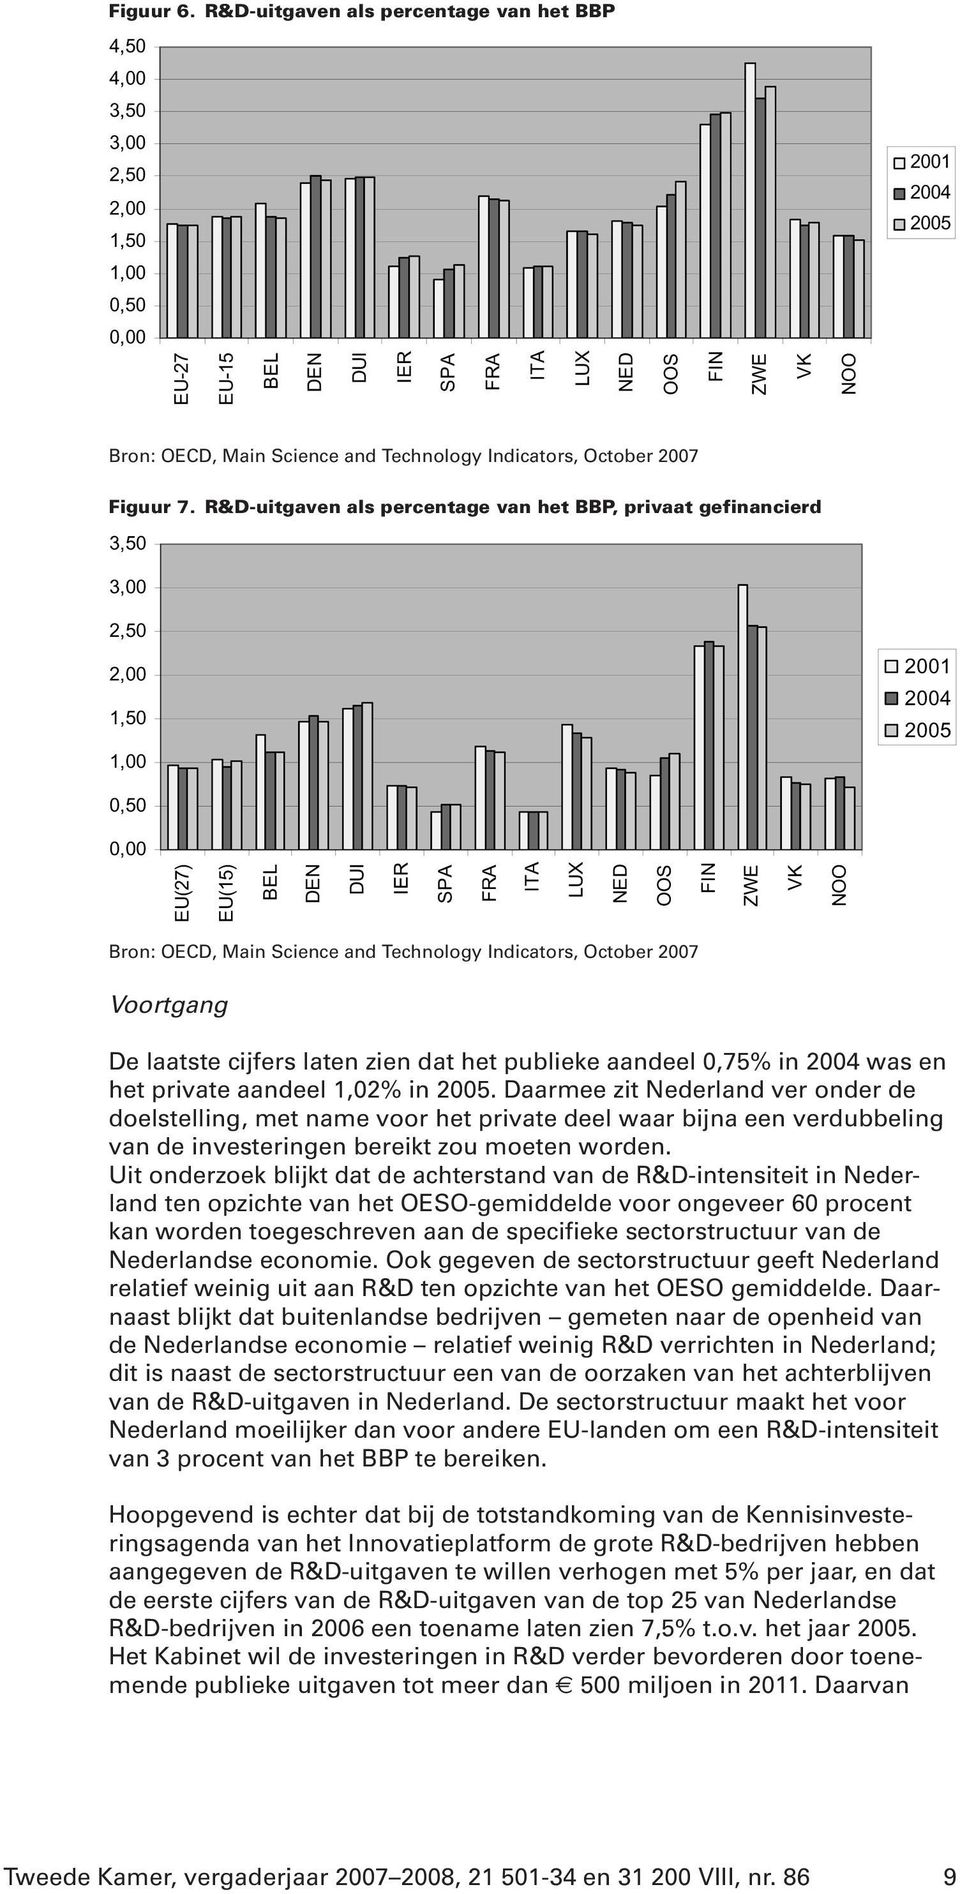 en het private aandeel 1,02% in 2005. Daarmee zit Nederland ver onder de doelstelling, met name voor het private deel waar bijna een verdubbeling van de investeringen bereikt zou moeten worden.